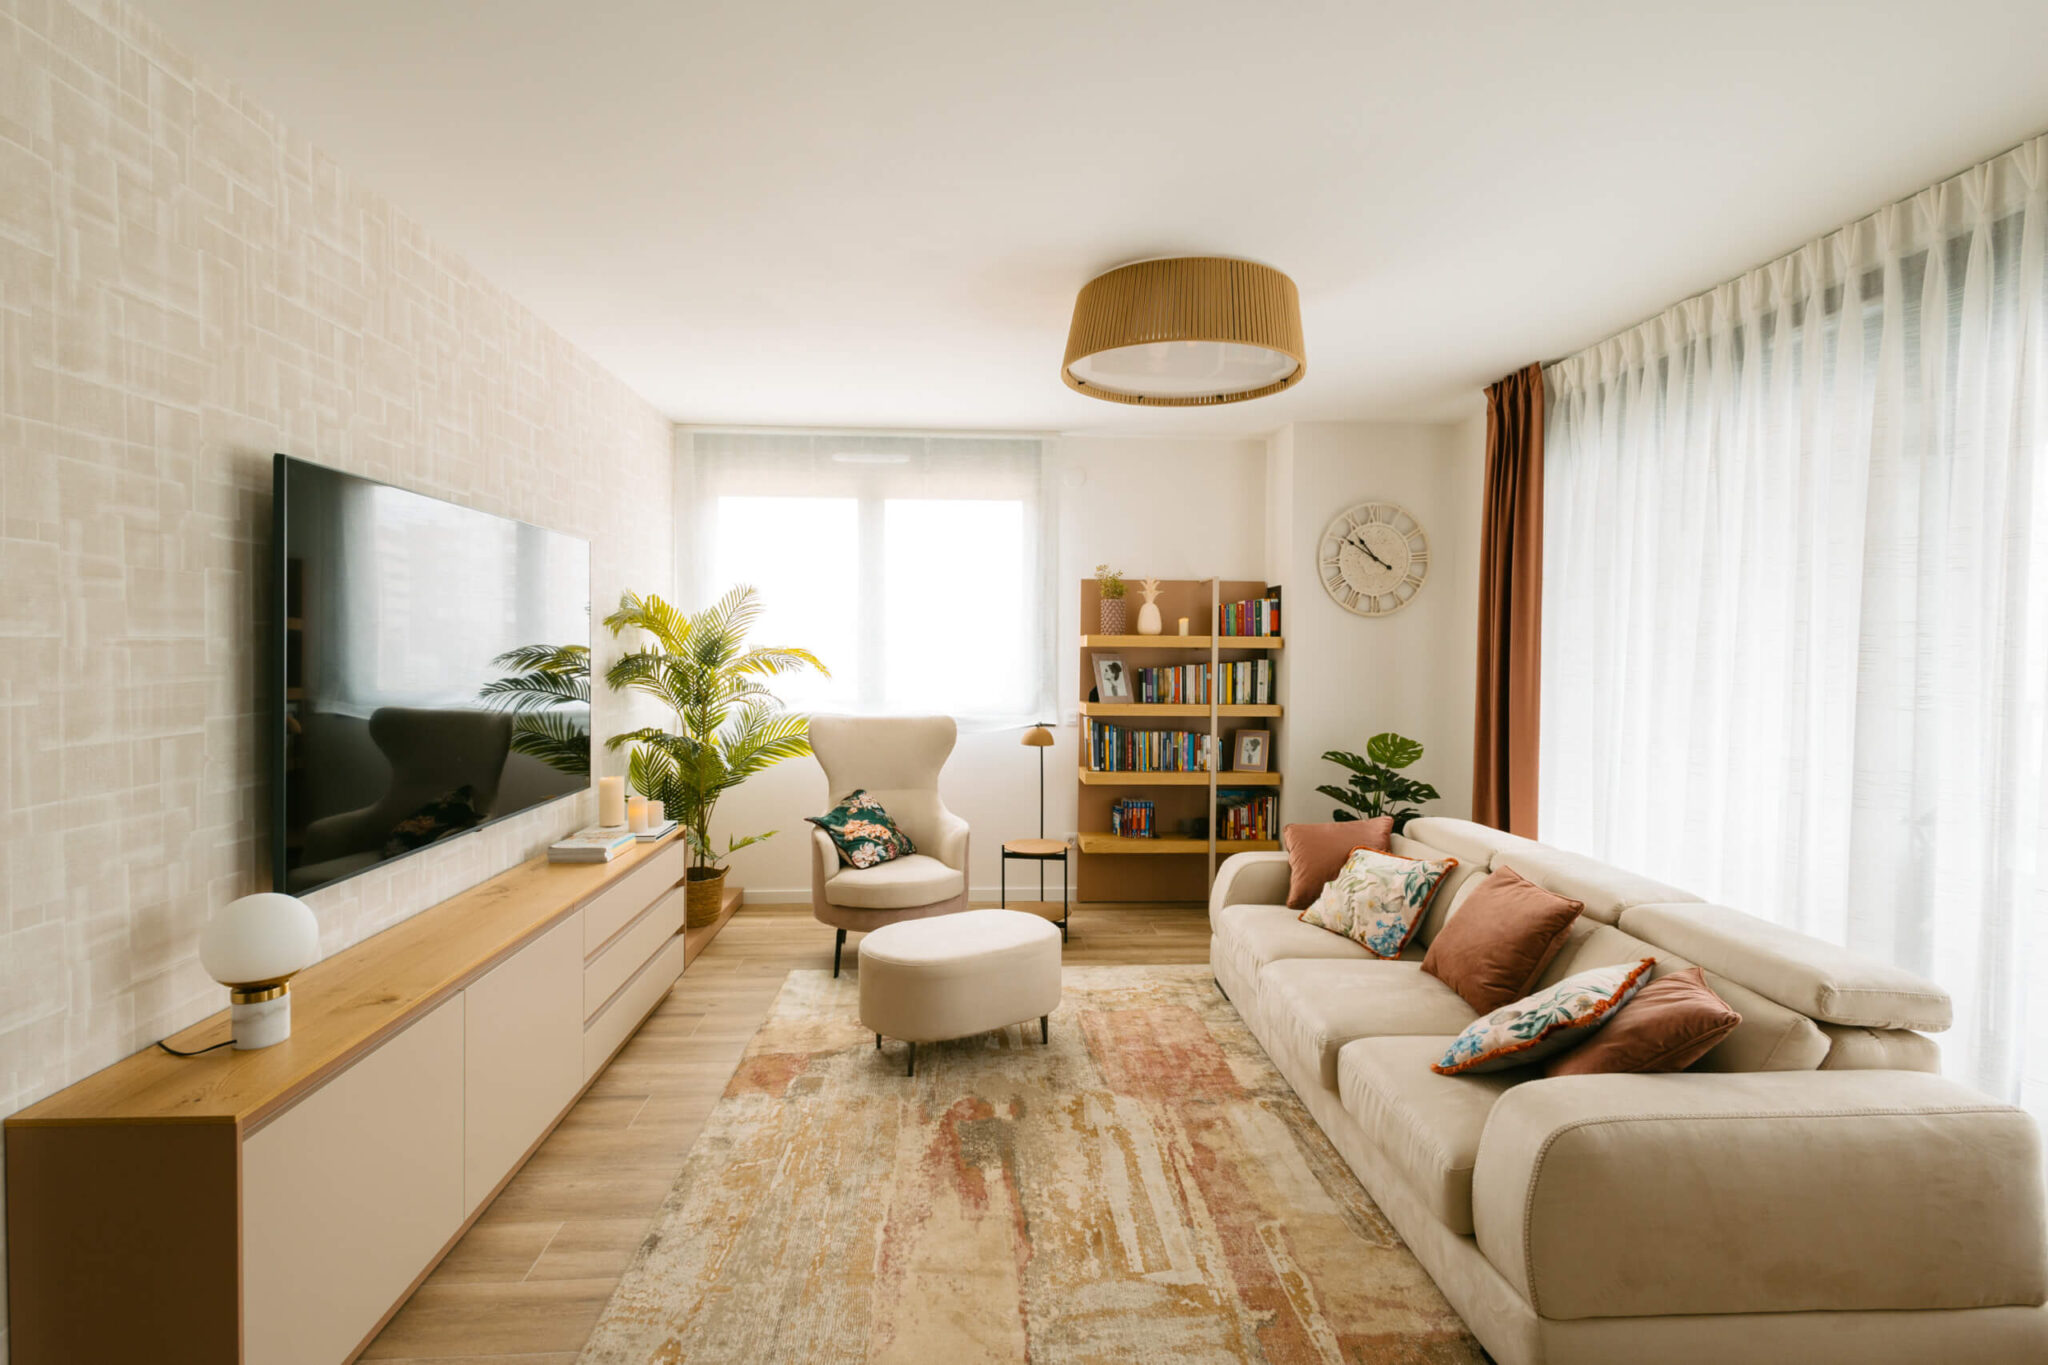 Salón decorado con tonos y sofá beige por los interioristas de Habitaka en Vitoria Gasteiz.